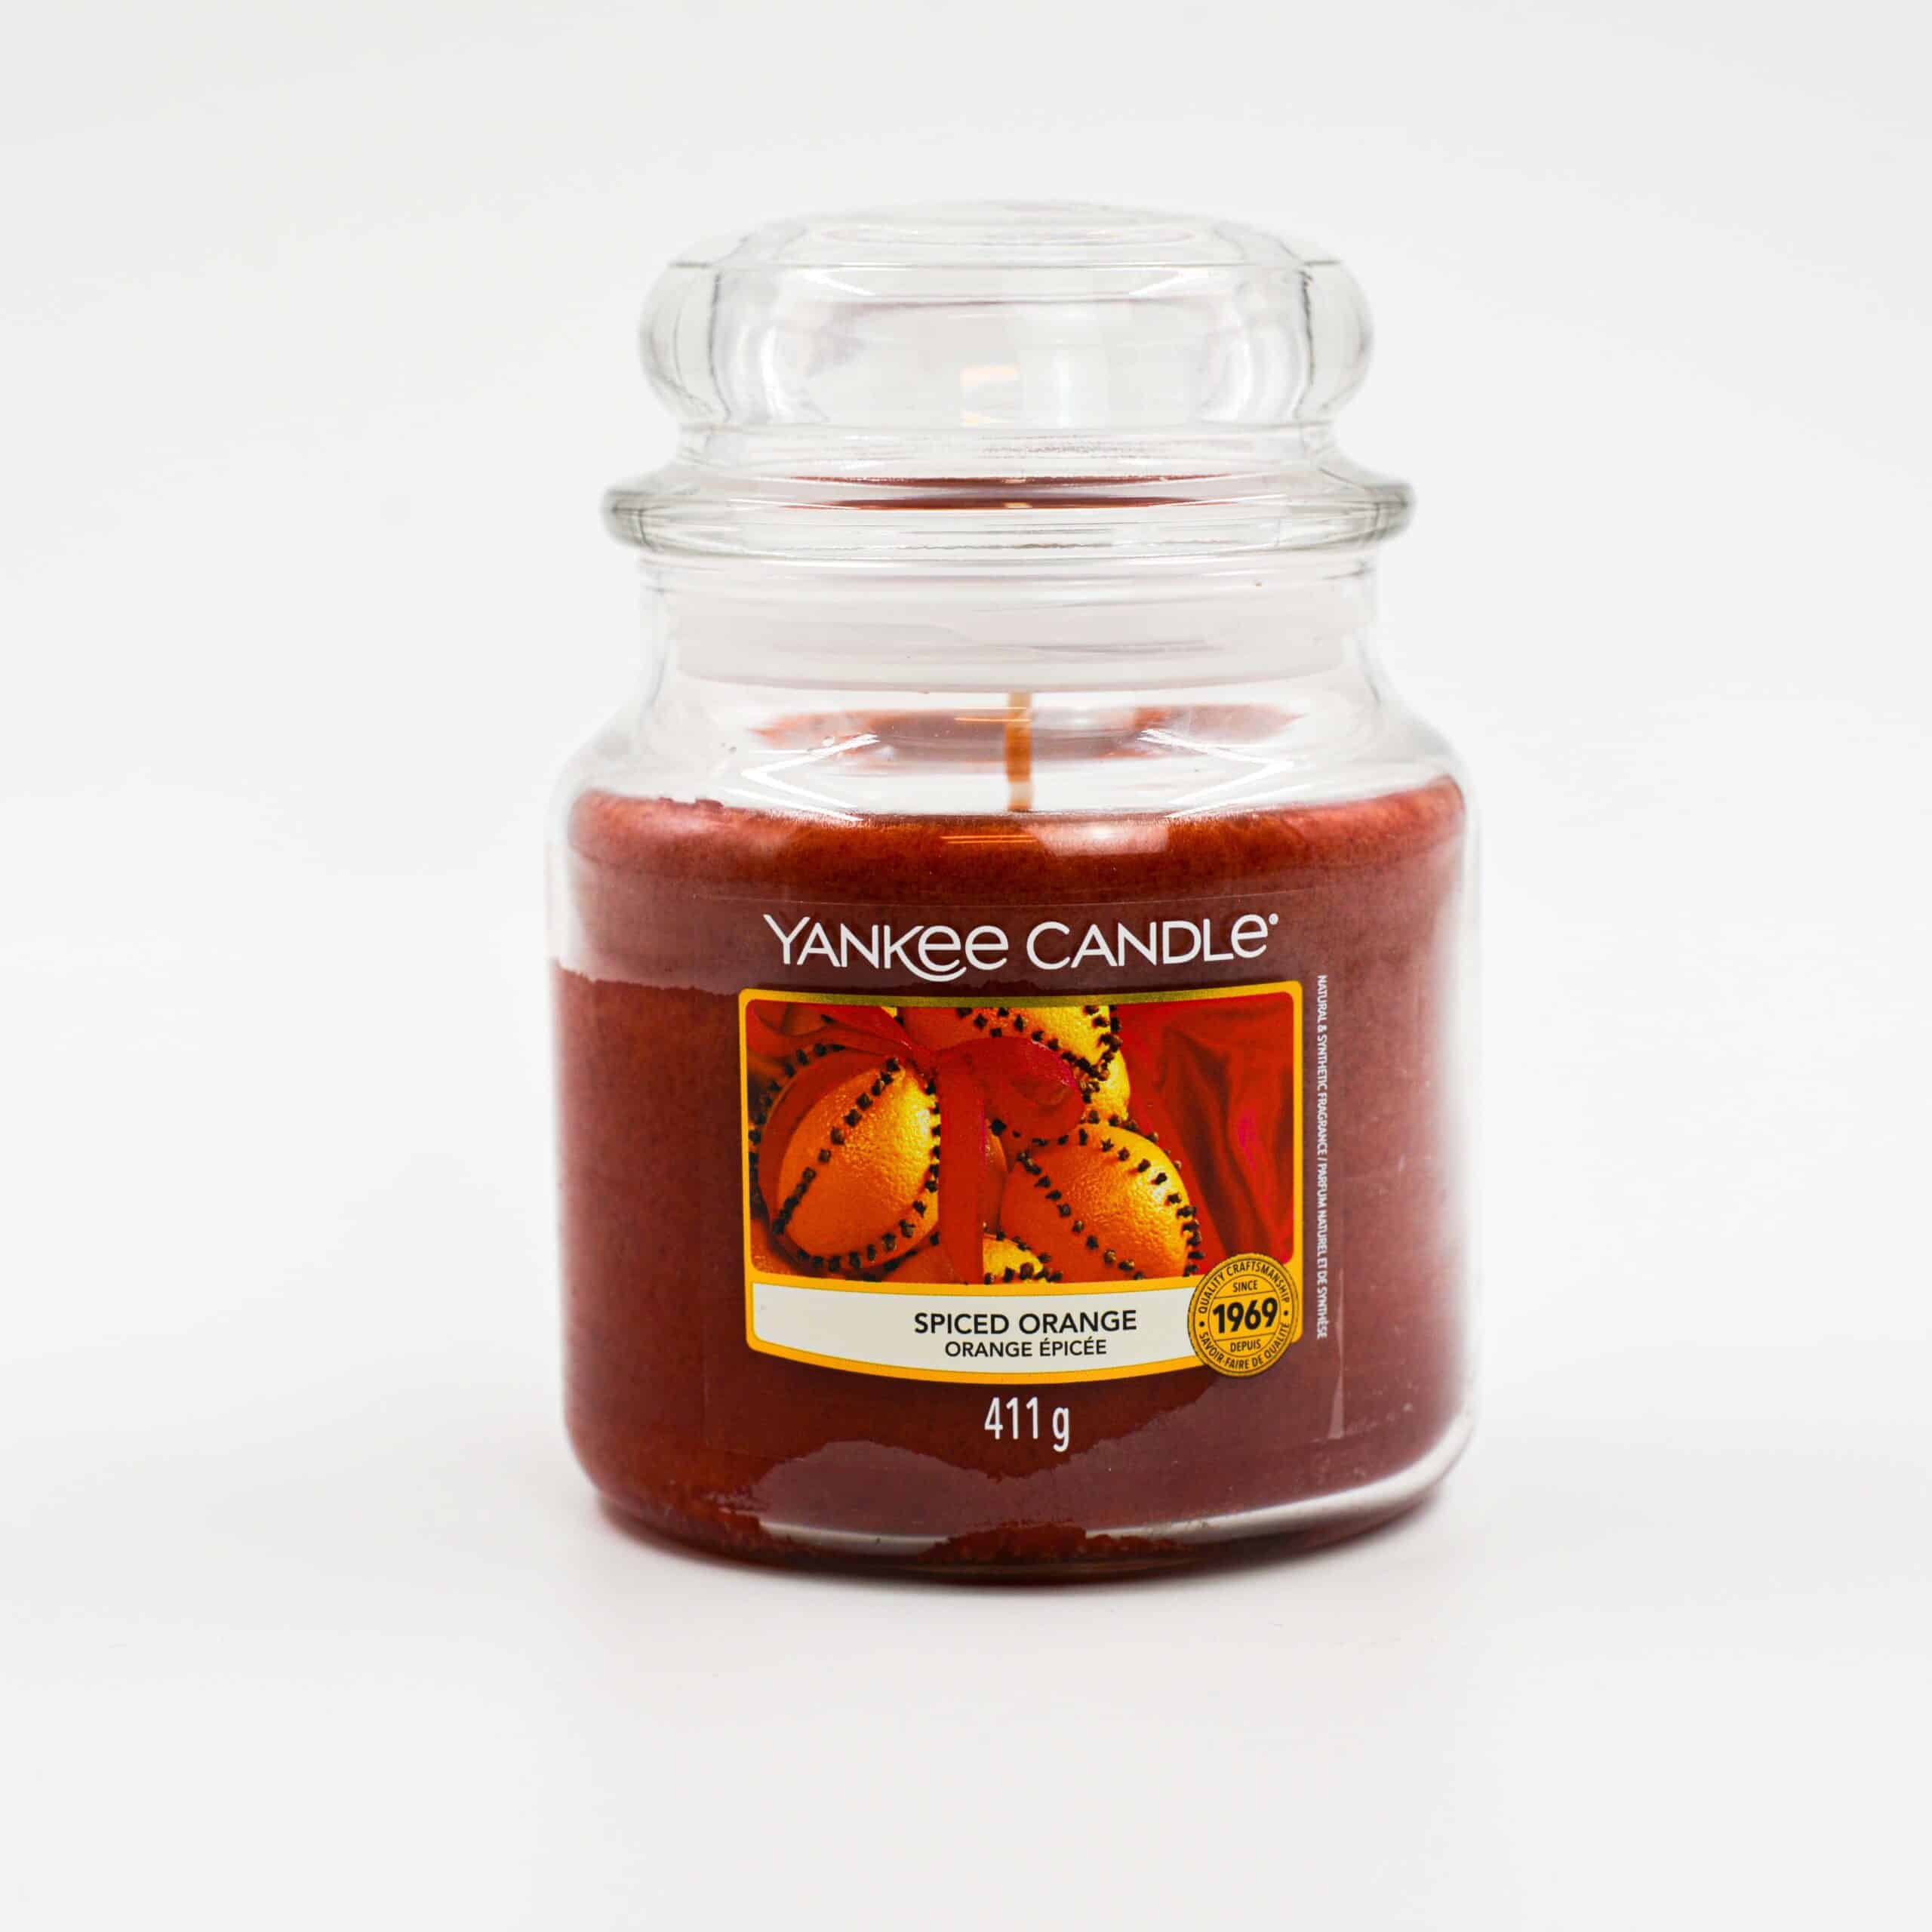 Yankee Candle Spiced orange große Kerze